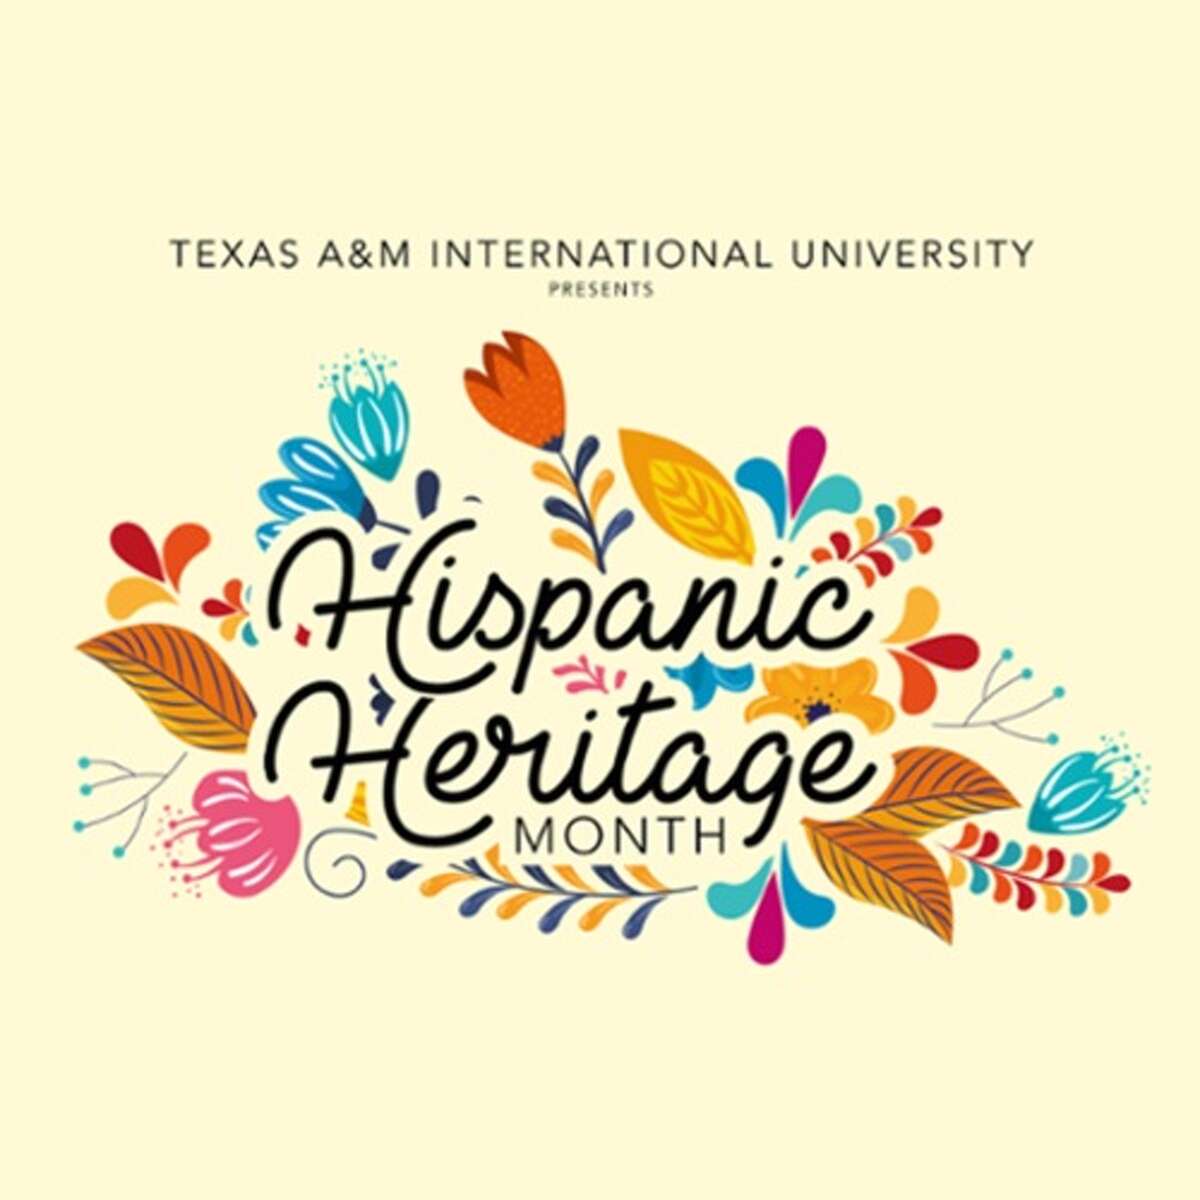 TAMIU began its celebration for Hispanic Heritage Month this week.